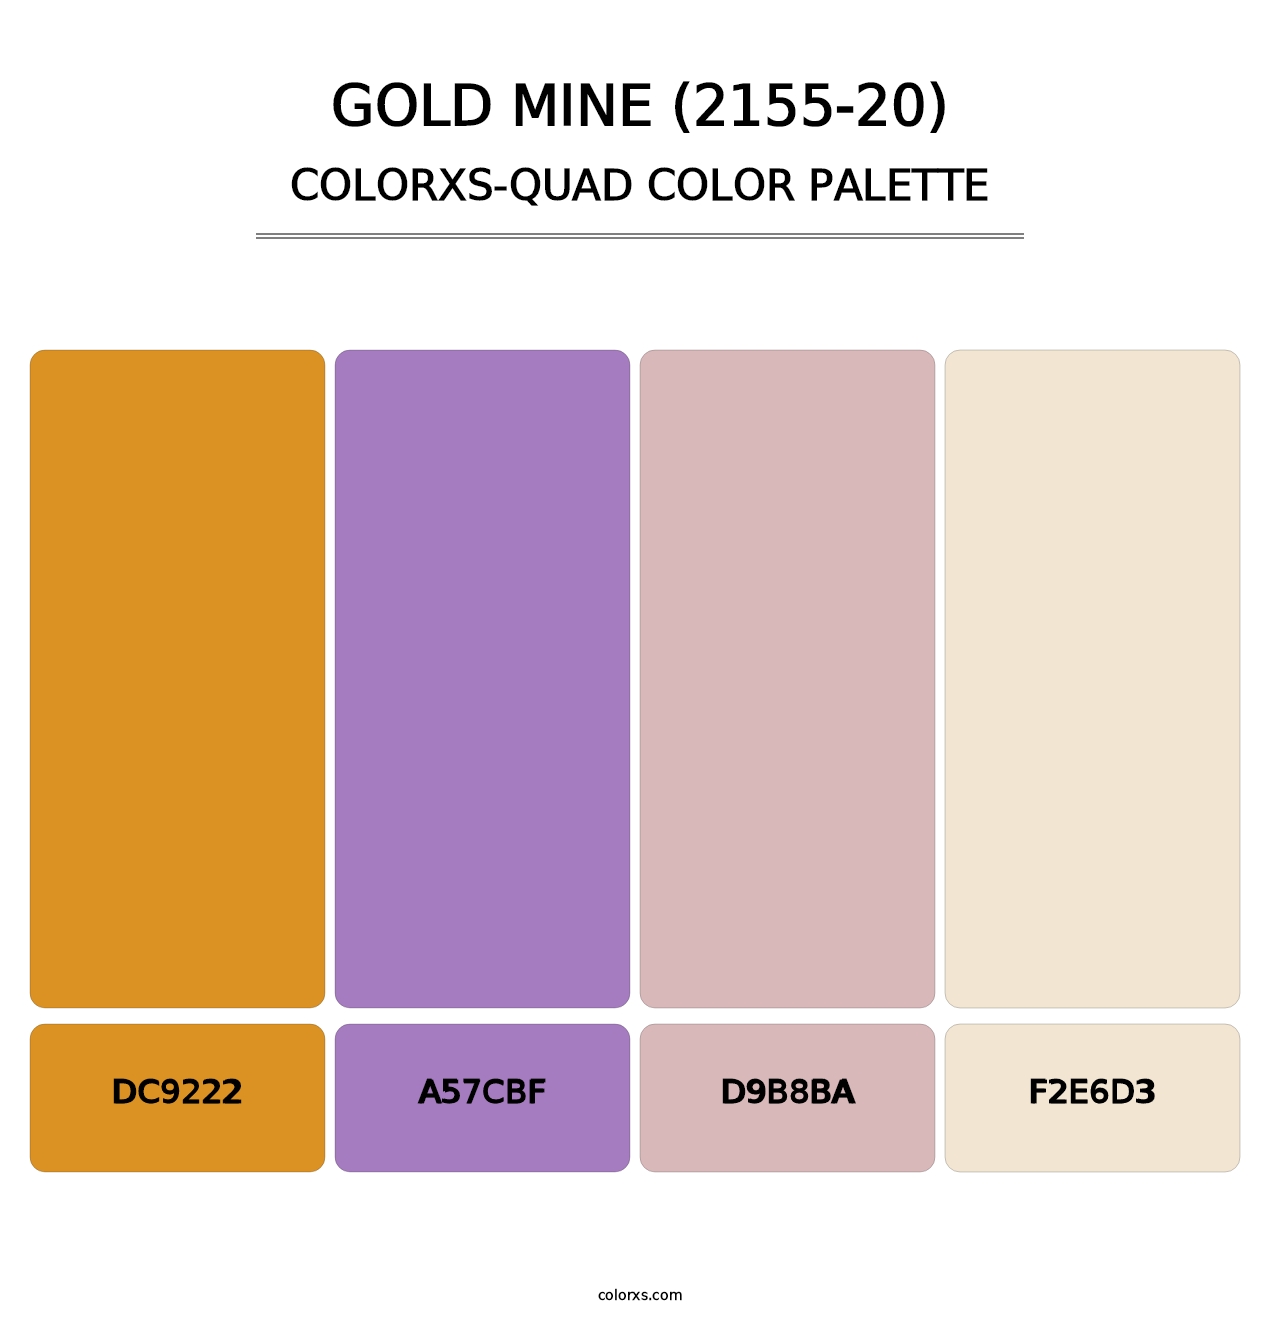 Gold Mine (2155-20) - Colorxs Quad Palette